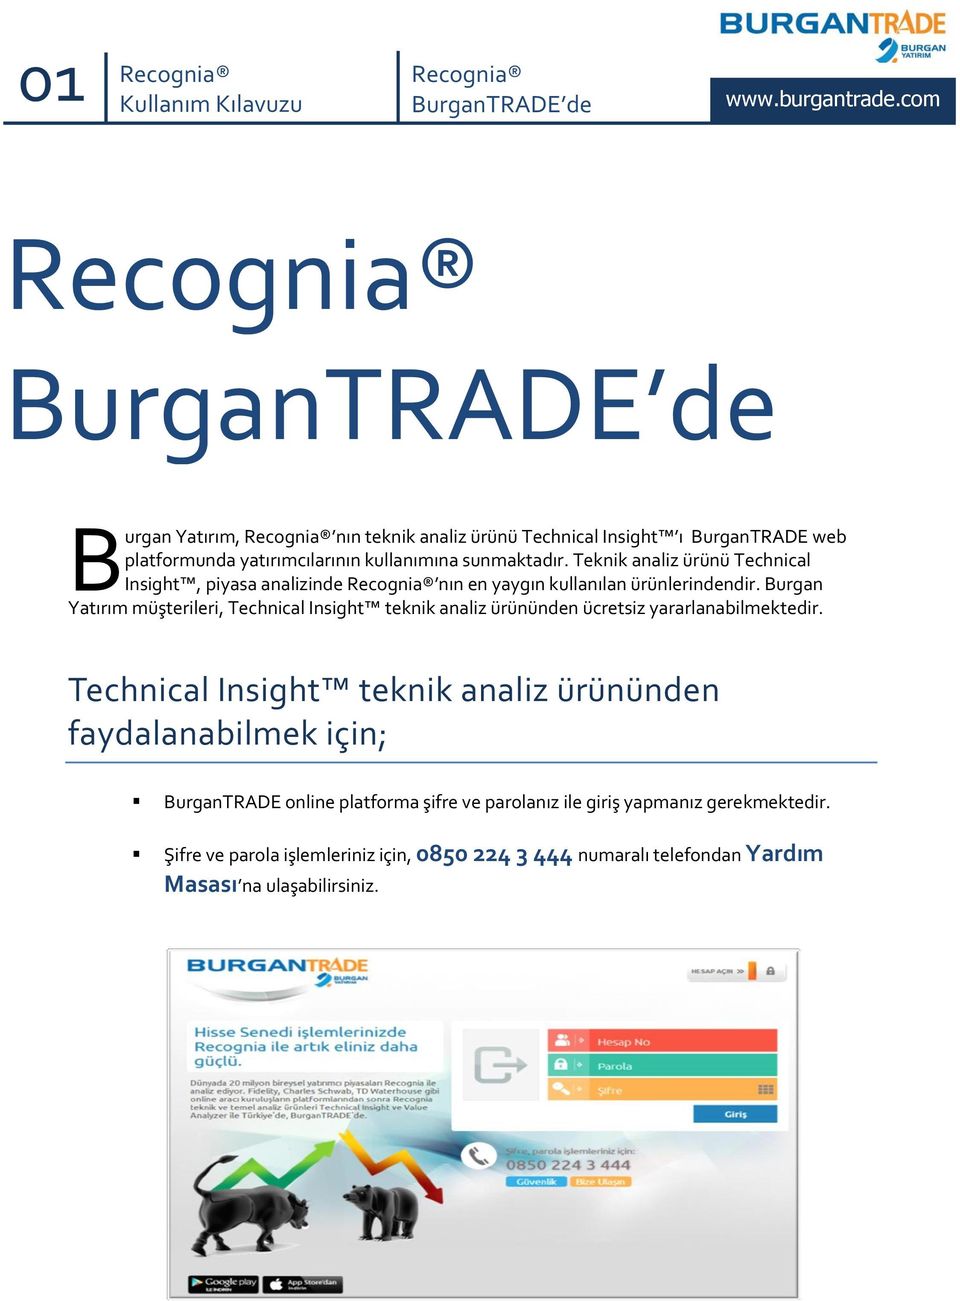 Burgan Yatırım müşterileri, Technical Insight teknik analiz ürününden ücretsiz yararlanabilmektedir.